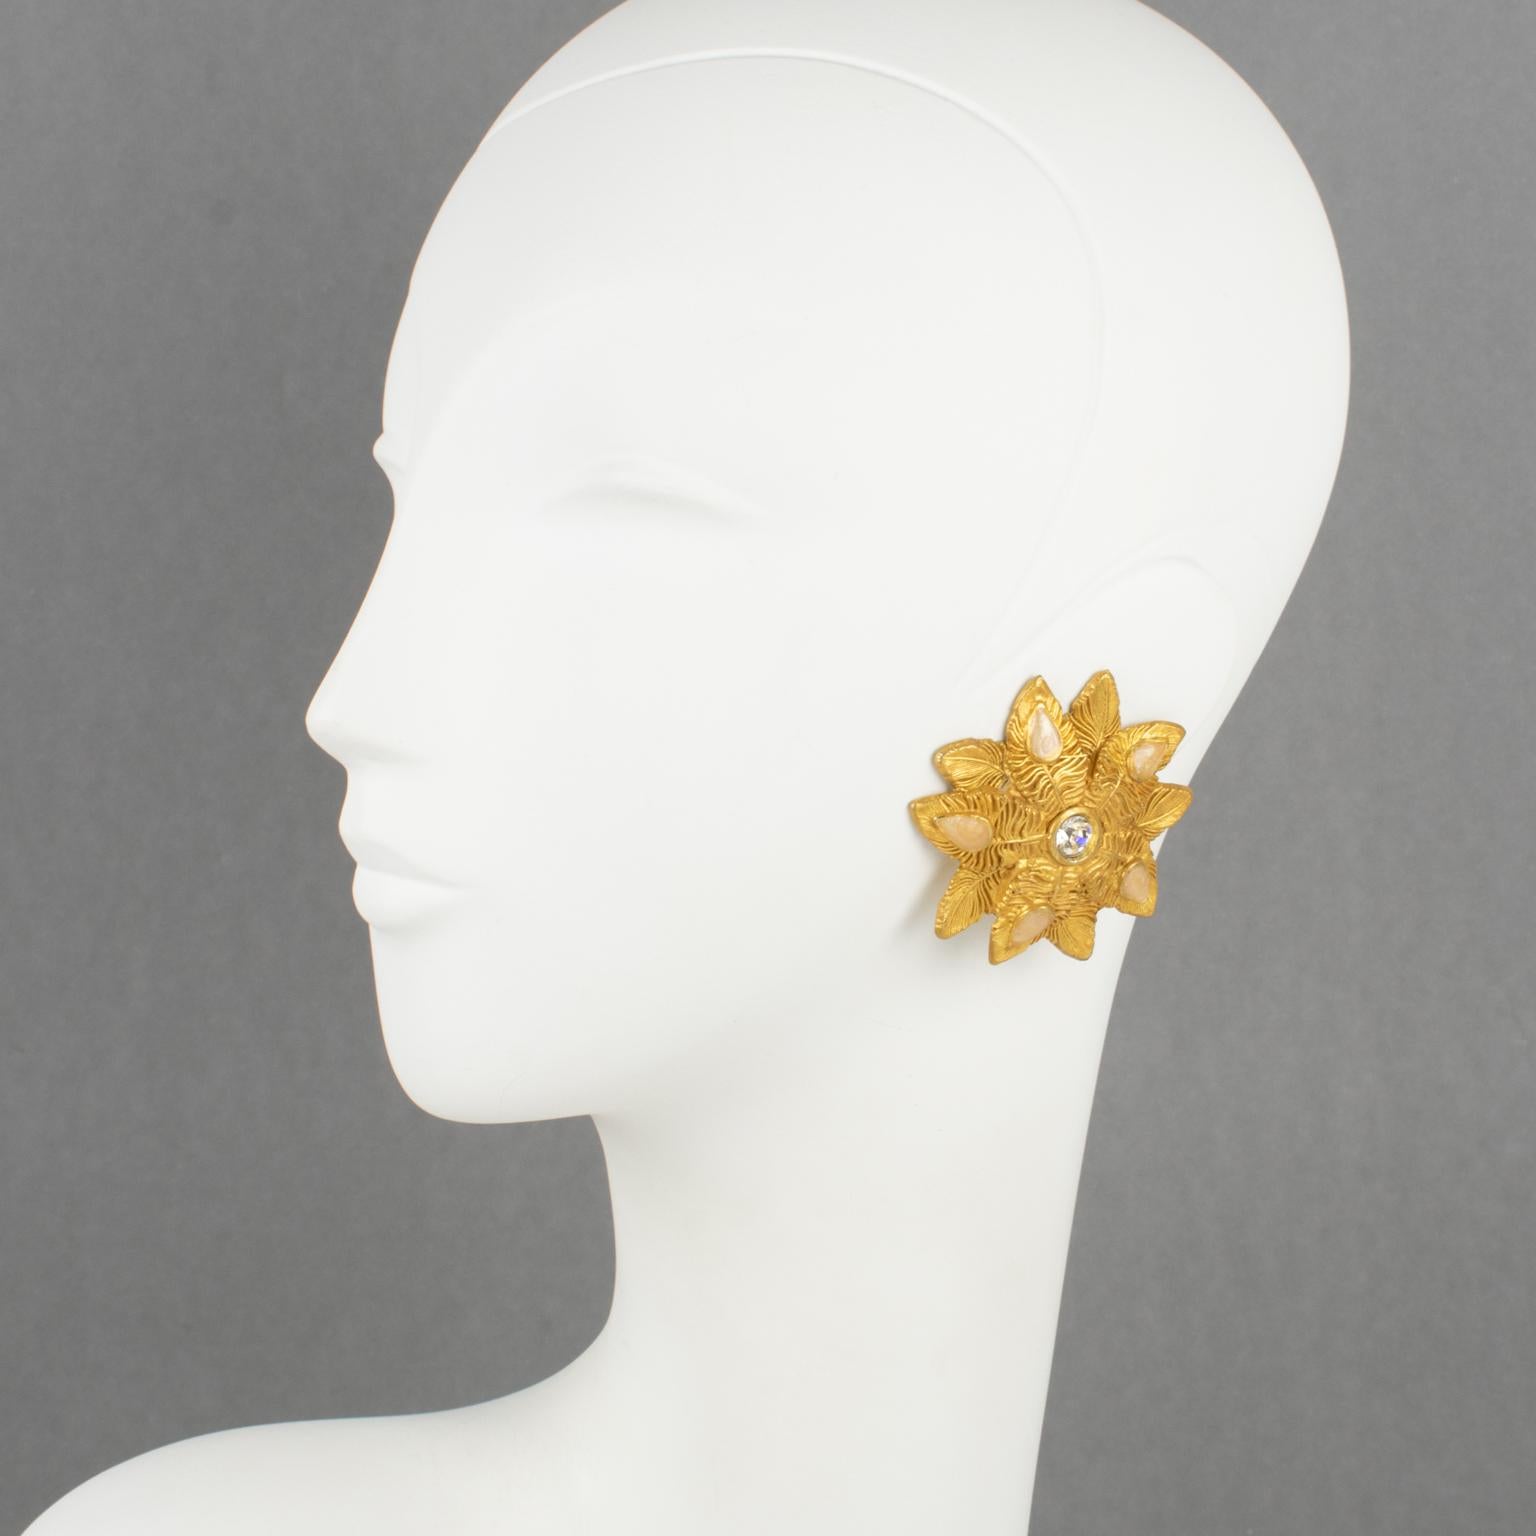 Claire Deve, Parius, a conçu ces spectaculaires boucles d'oreilles à clip dans les années 1980. Elles présentent une forme florale en métal doré, entièrement ciselé et texturé, surmontée de cabochons en forme de larme en émail rose clair perlé, et